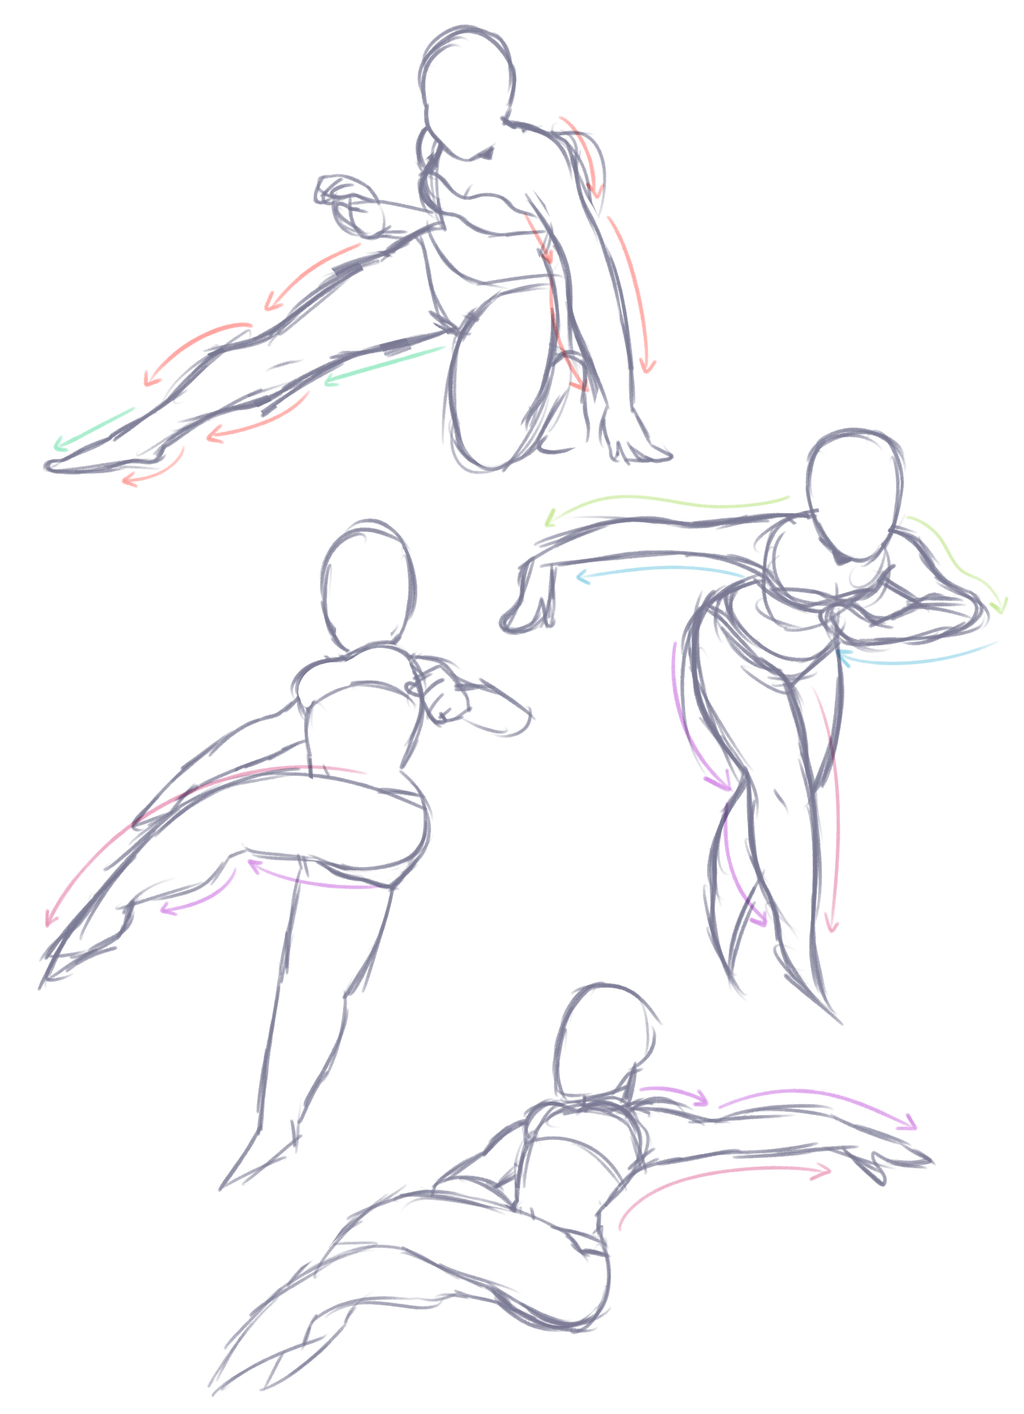 pose de dança (dance pose) 2 | Dancing drawings, Figure drawing reference, Drawing  poses